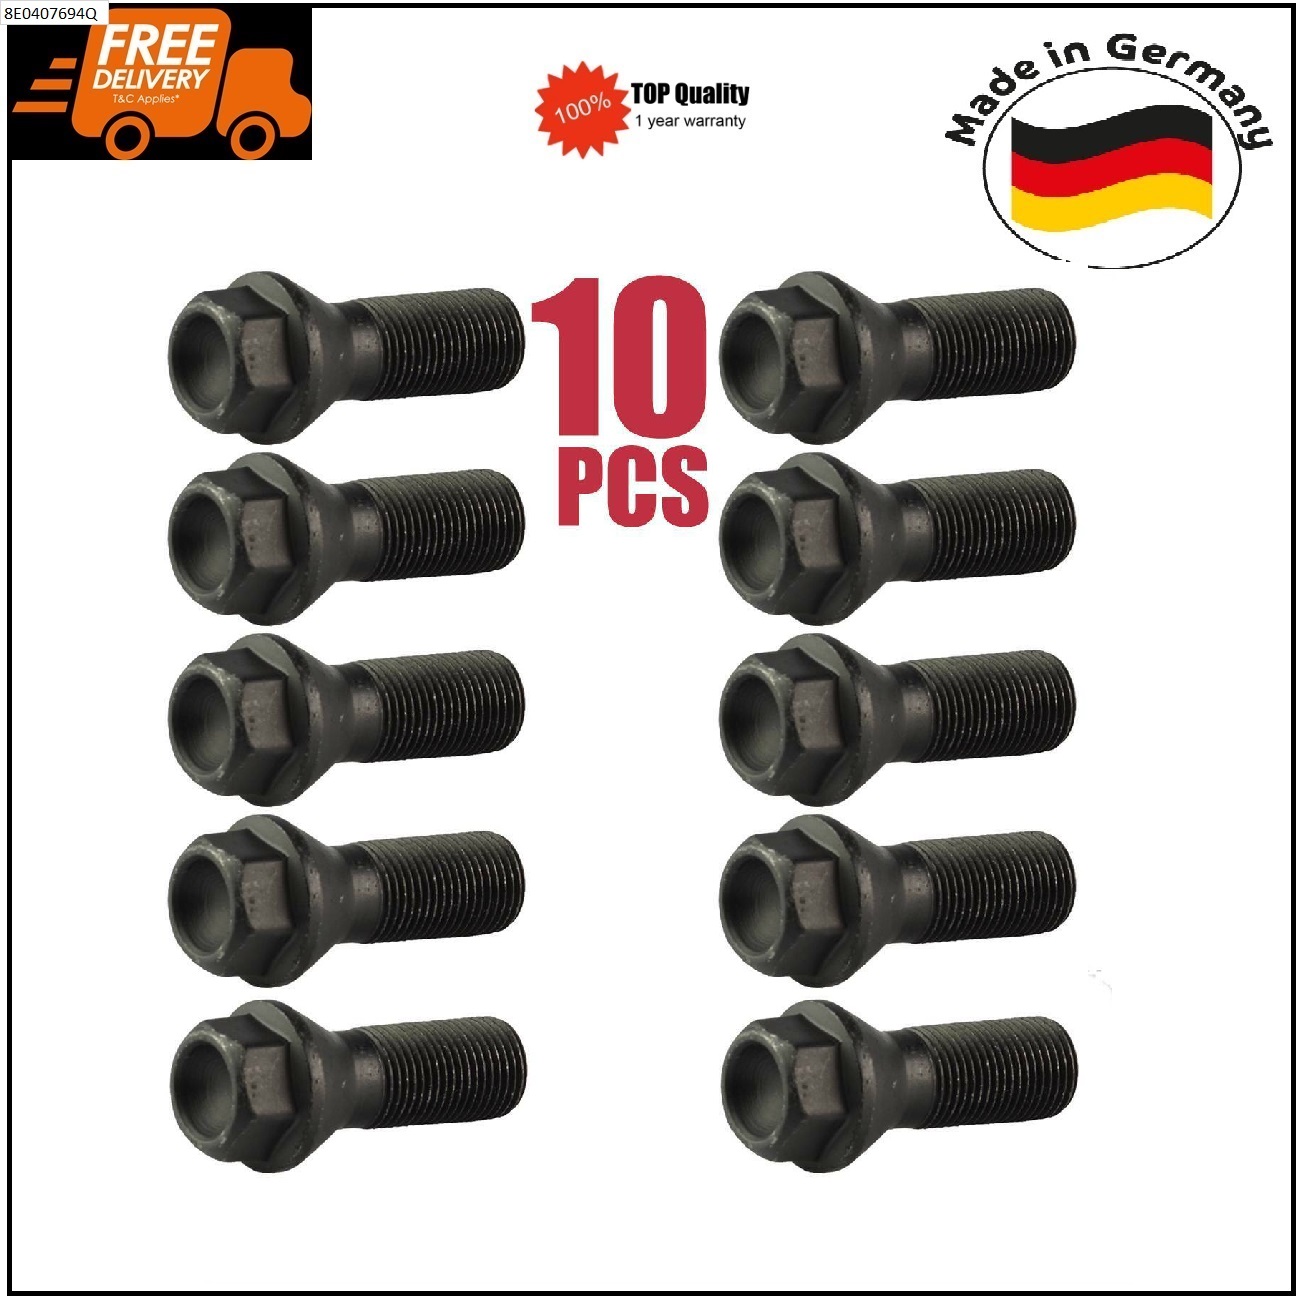 10Pcs Wheel Lug Bolts for BMW 3 5 6 7 X3 X5 X6 F20 F21 F22 36136774896 German Made